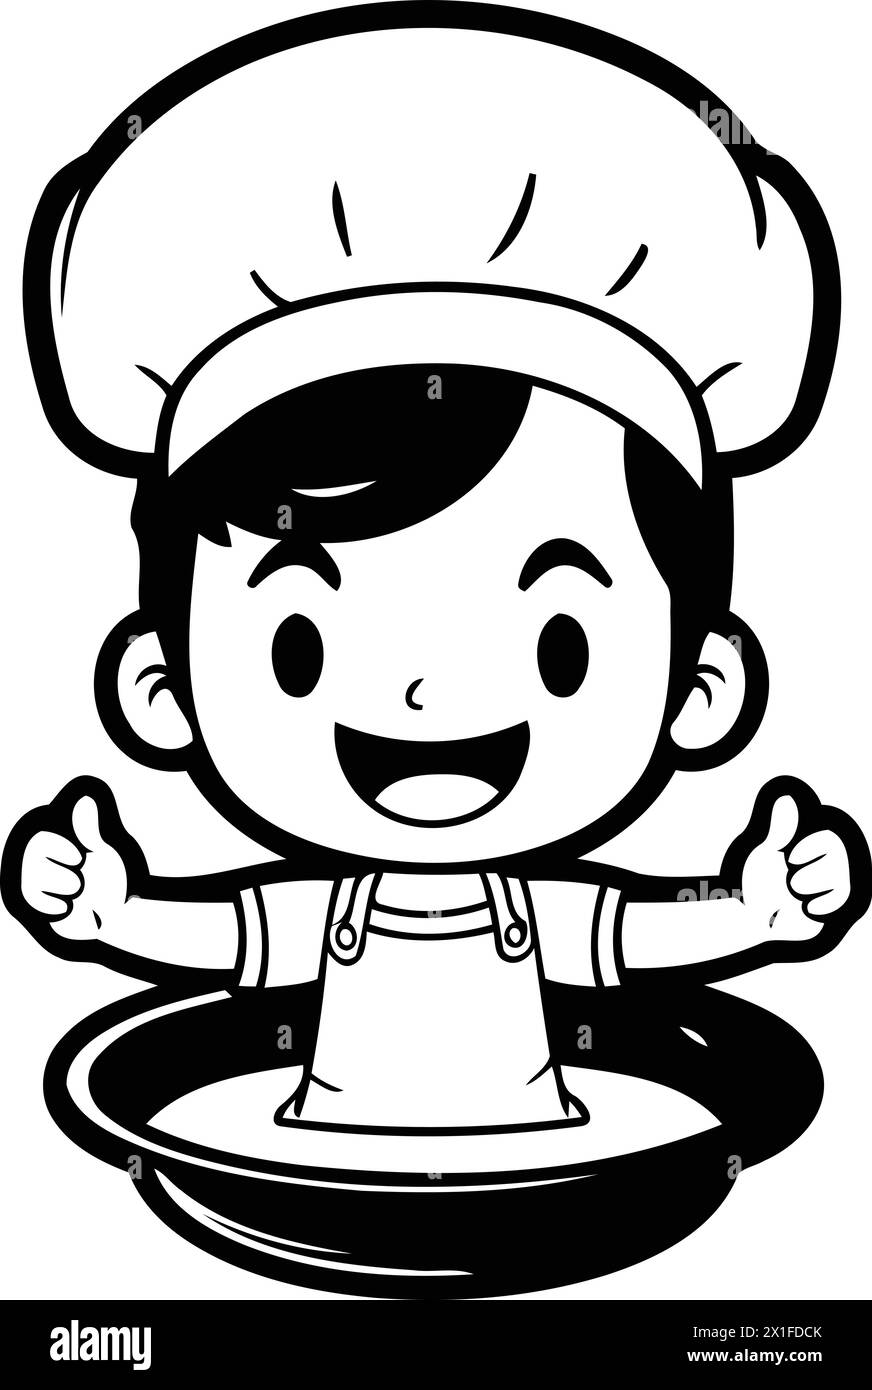 Carino illustrazione vettoriale dei cartoni animati dello chef boy. Cucina e ristorante. Illustrazione Vettoriale